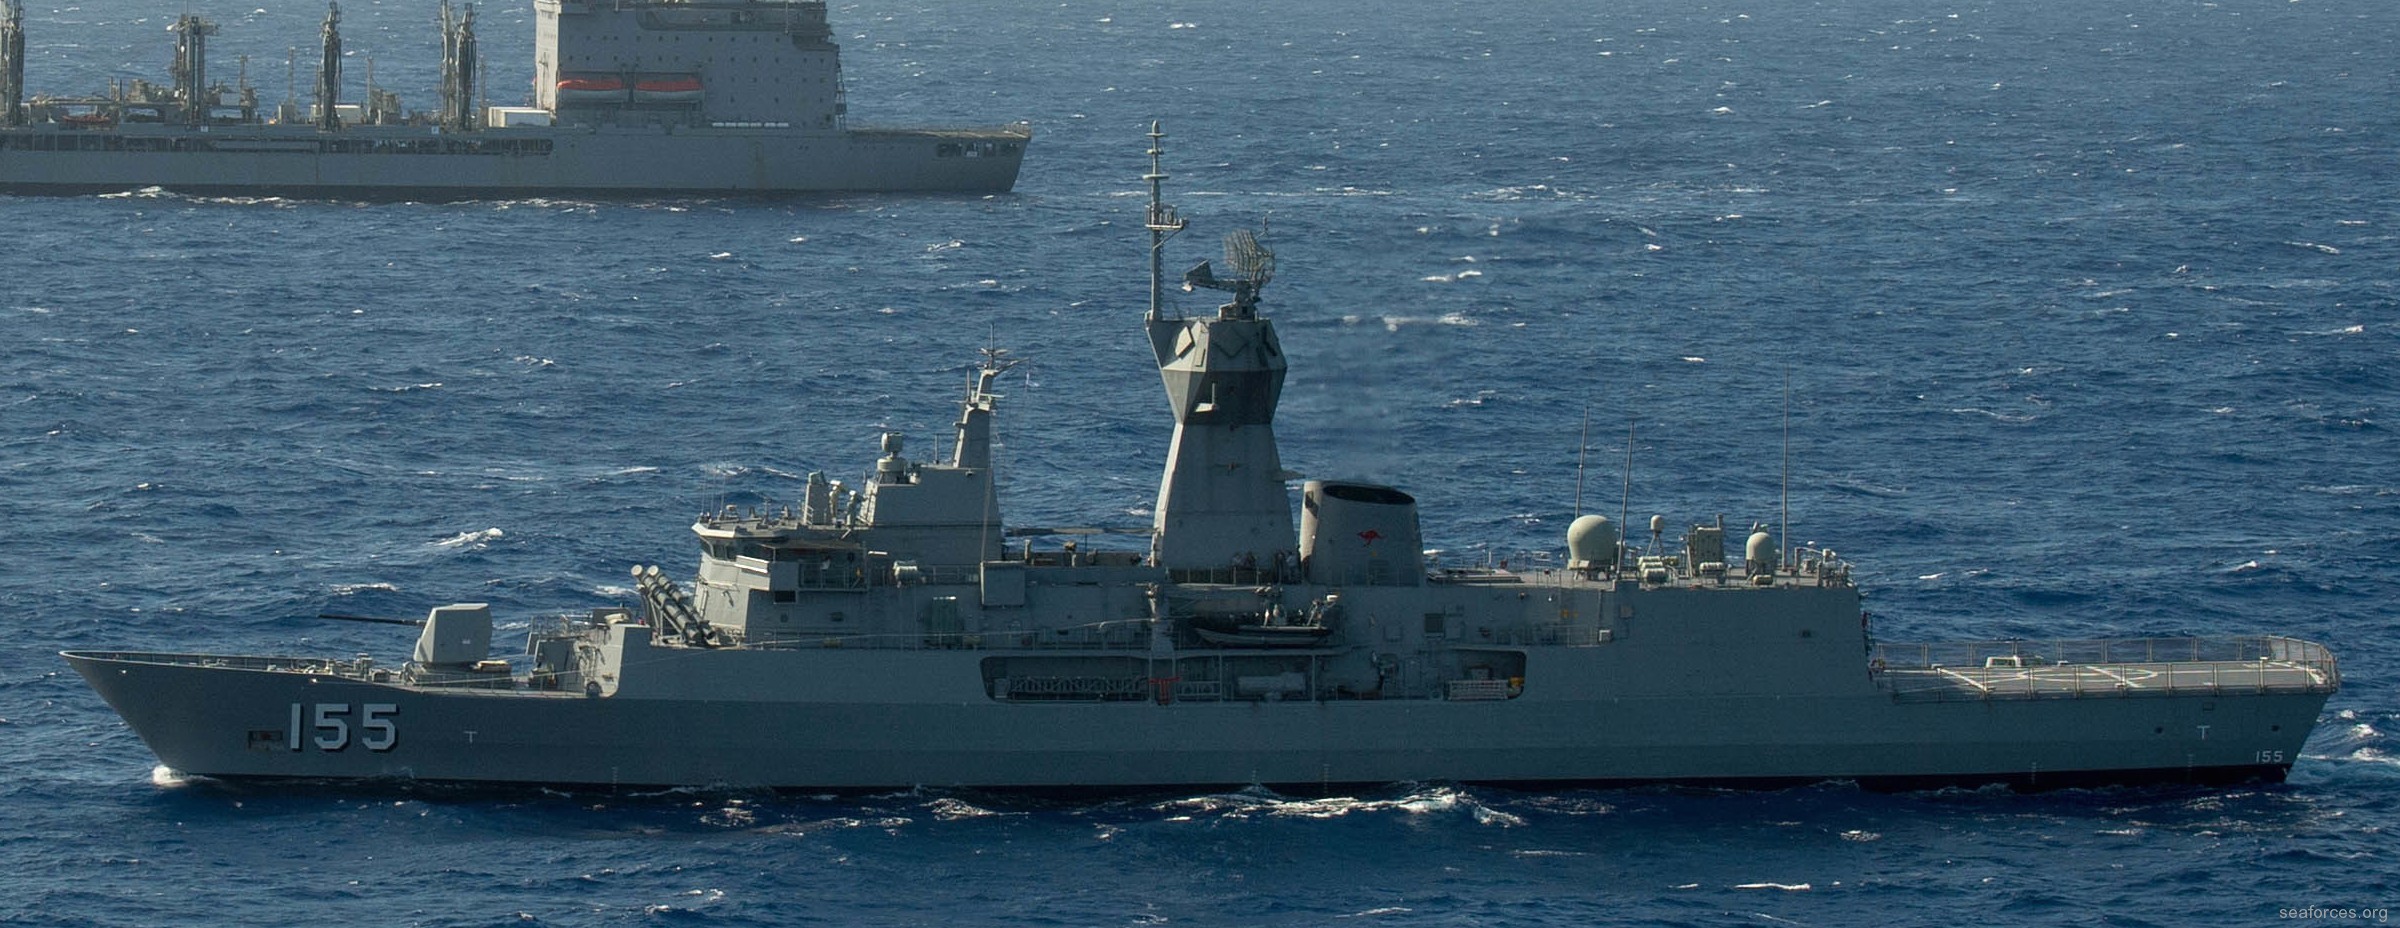 ffh-155 hms ballarat anzac class frigate royal australian navy 2016 32